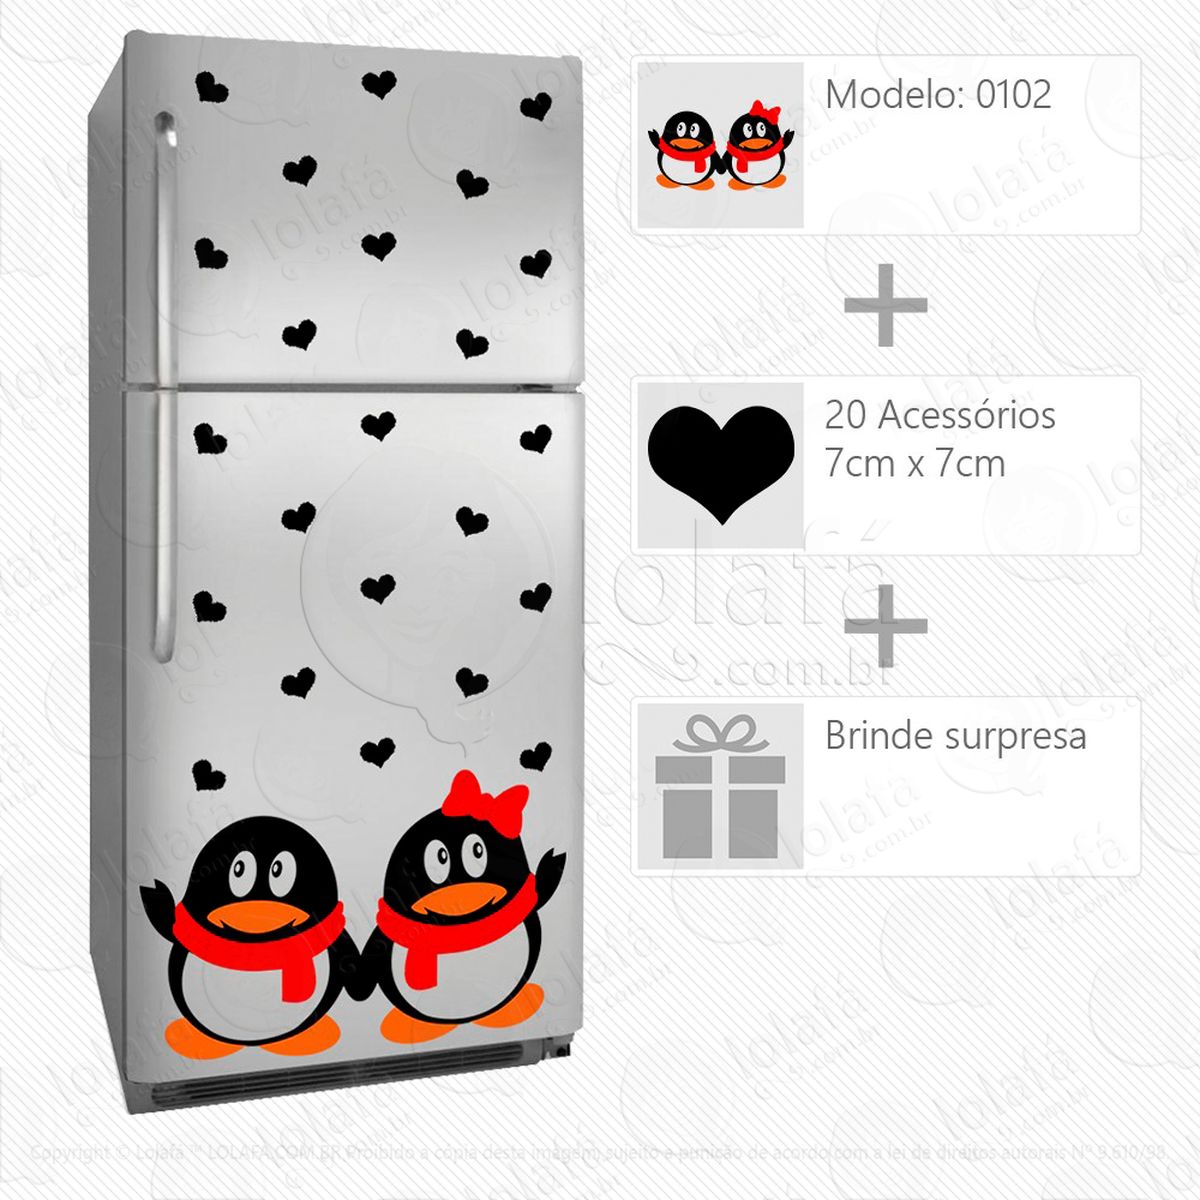 pinguins adesivo para geladeira e frigobar - mod:102